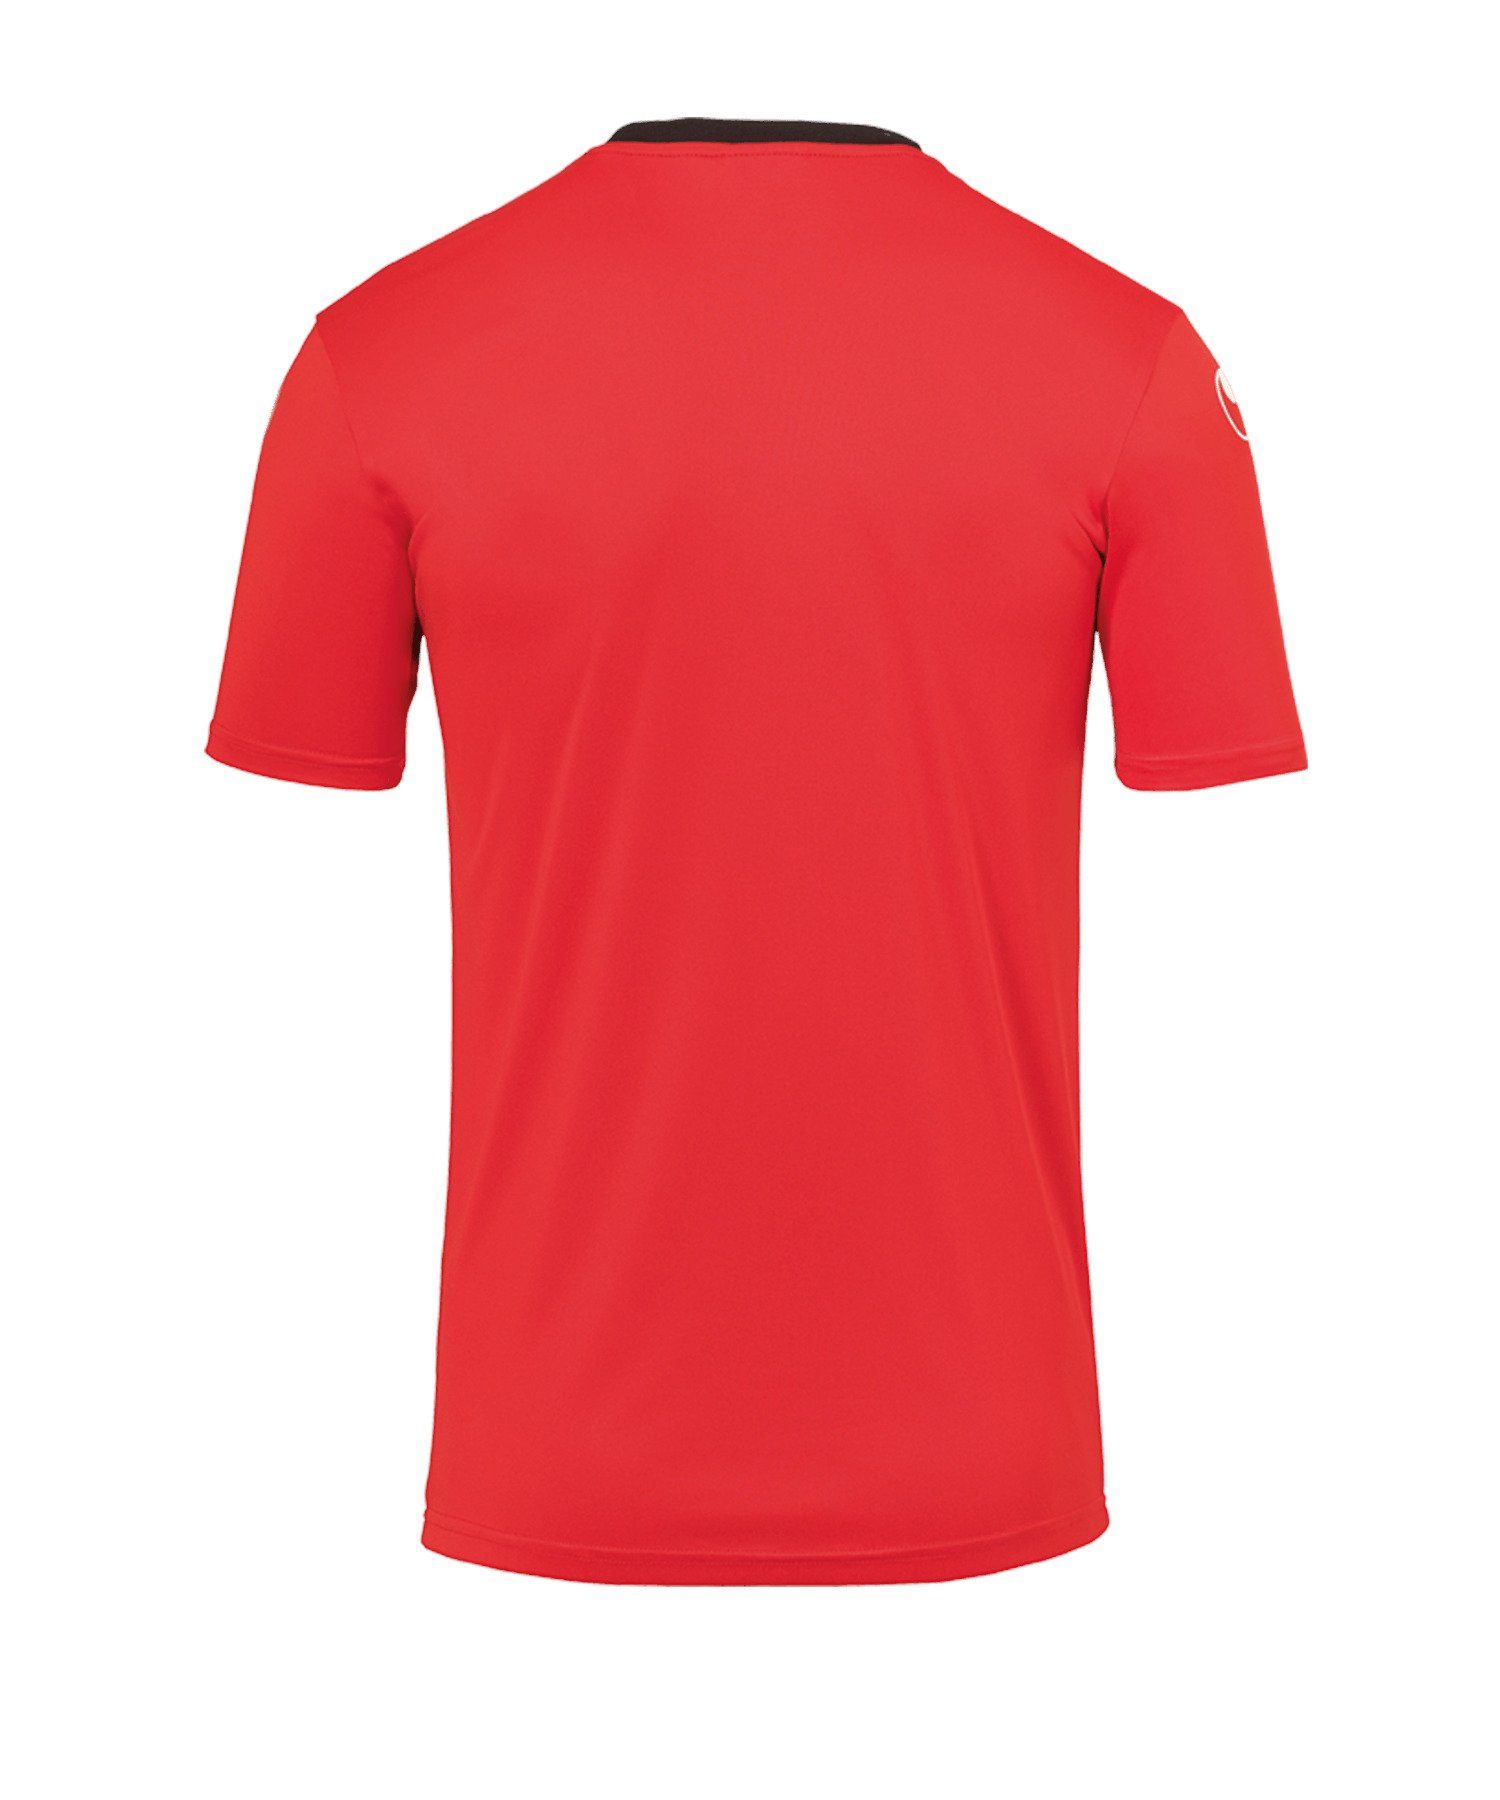 rotschwarz default T-Shirt Trainingsshirt 23 uhlsport Offense